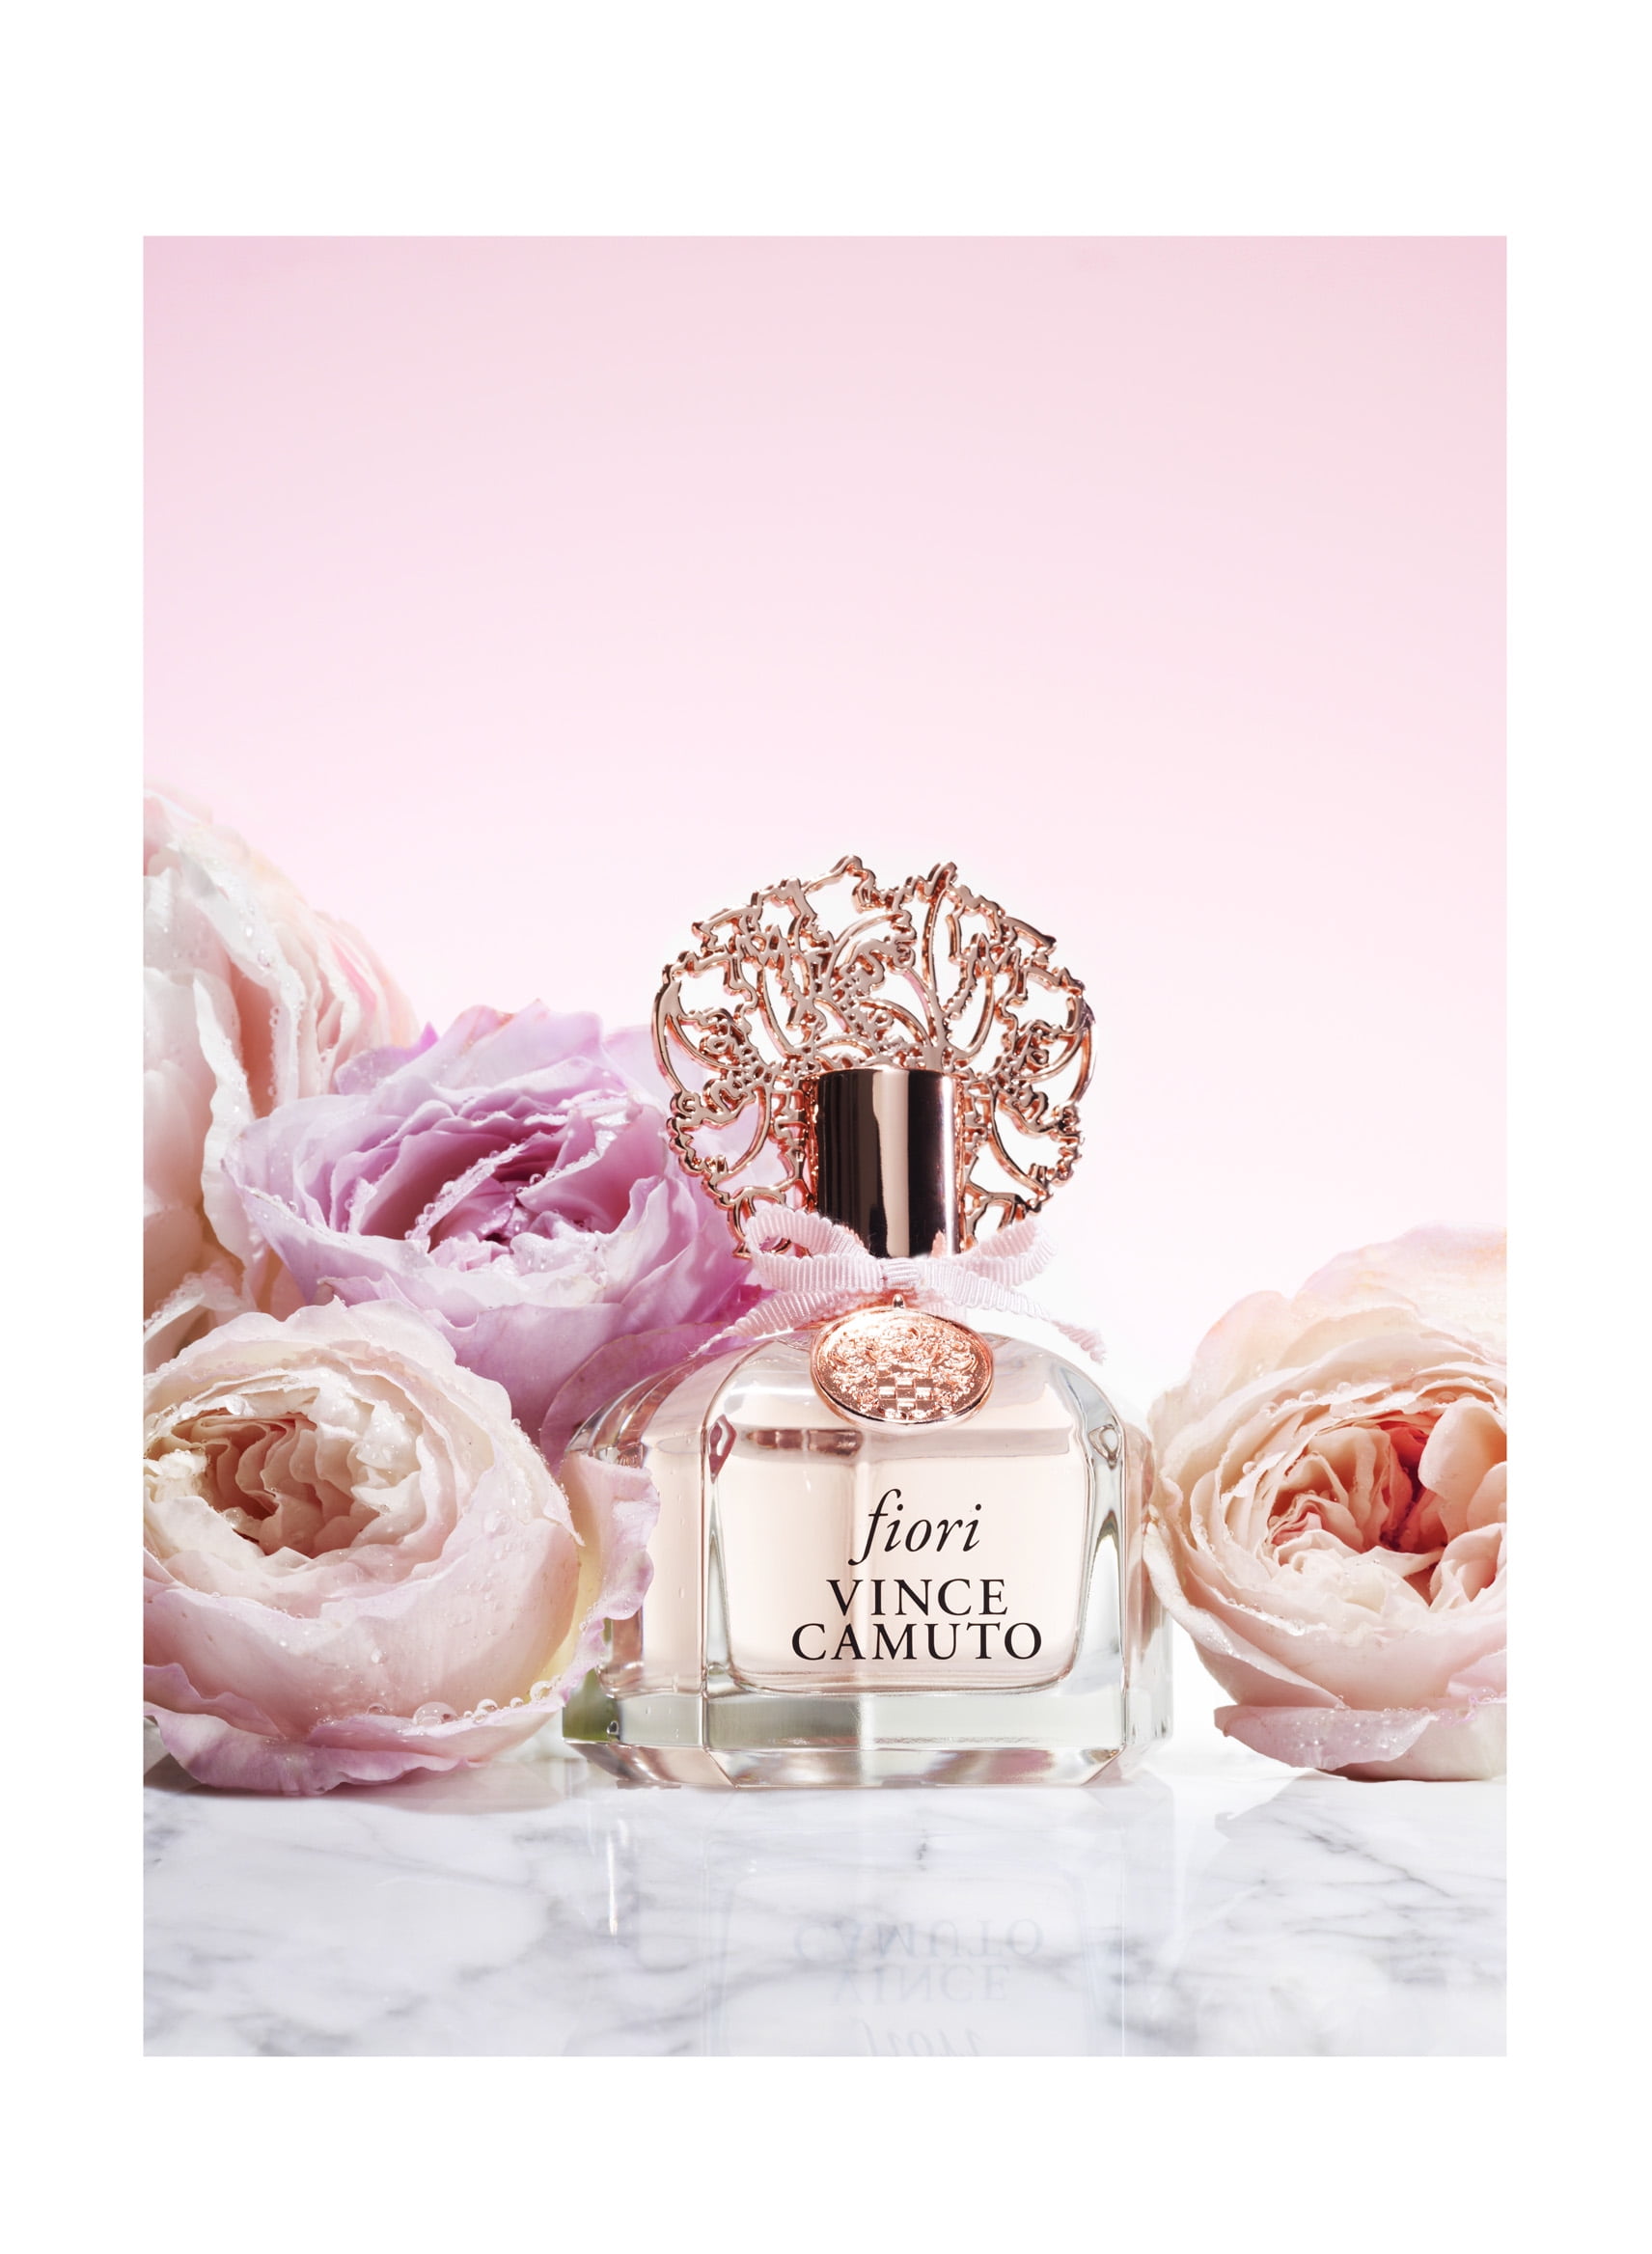 Vince Camuto Fiori Eau De Parfum Spray Perfume for Women